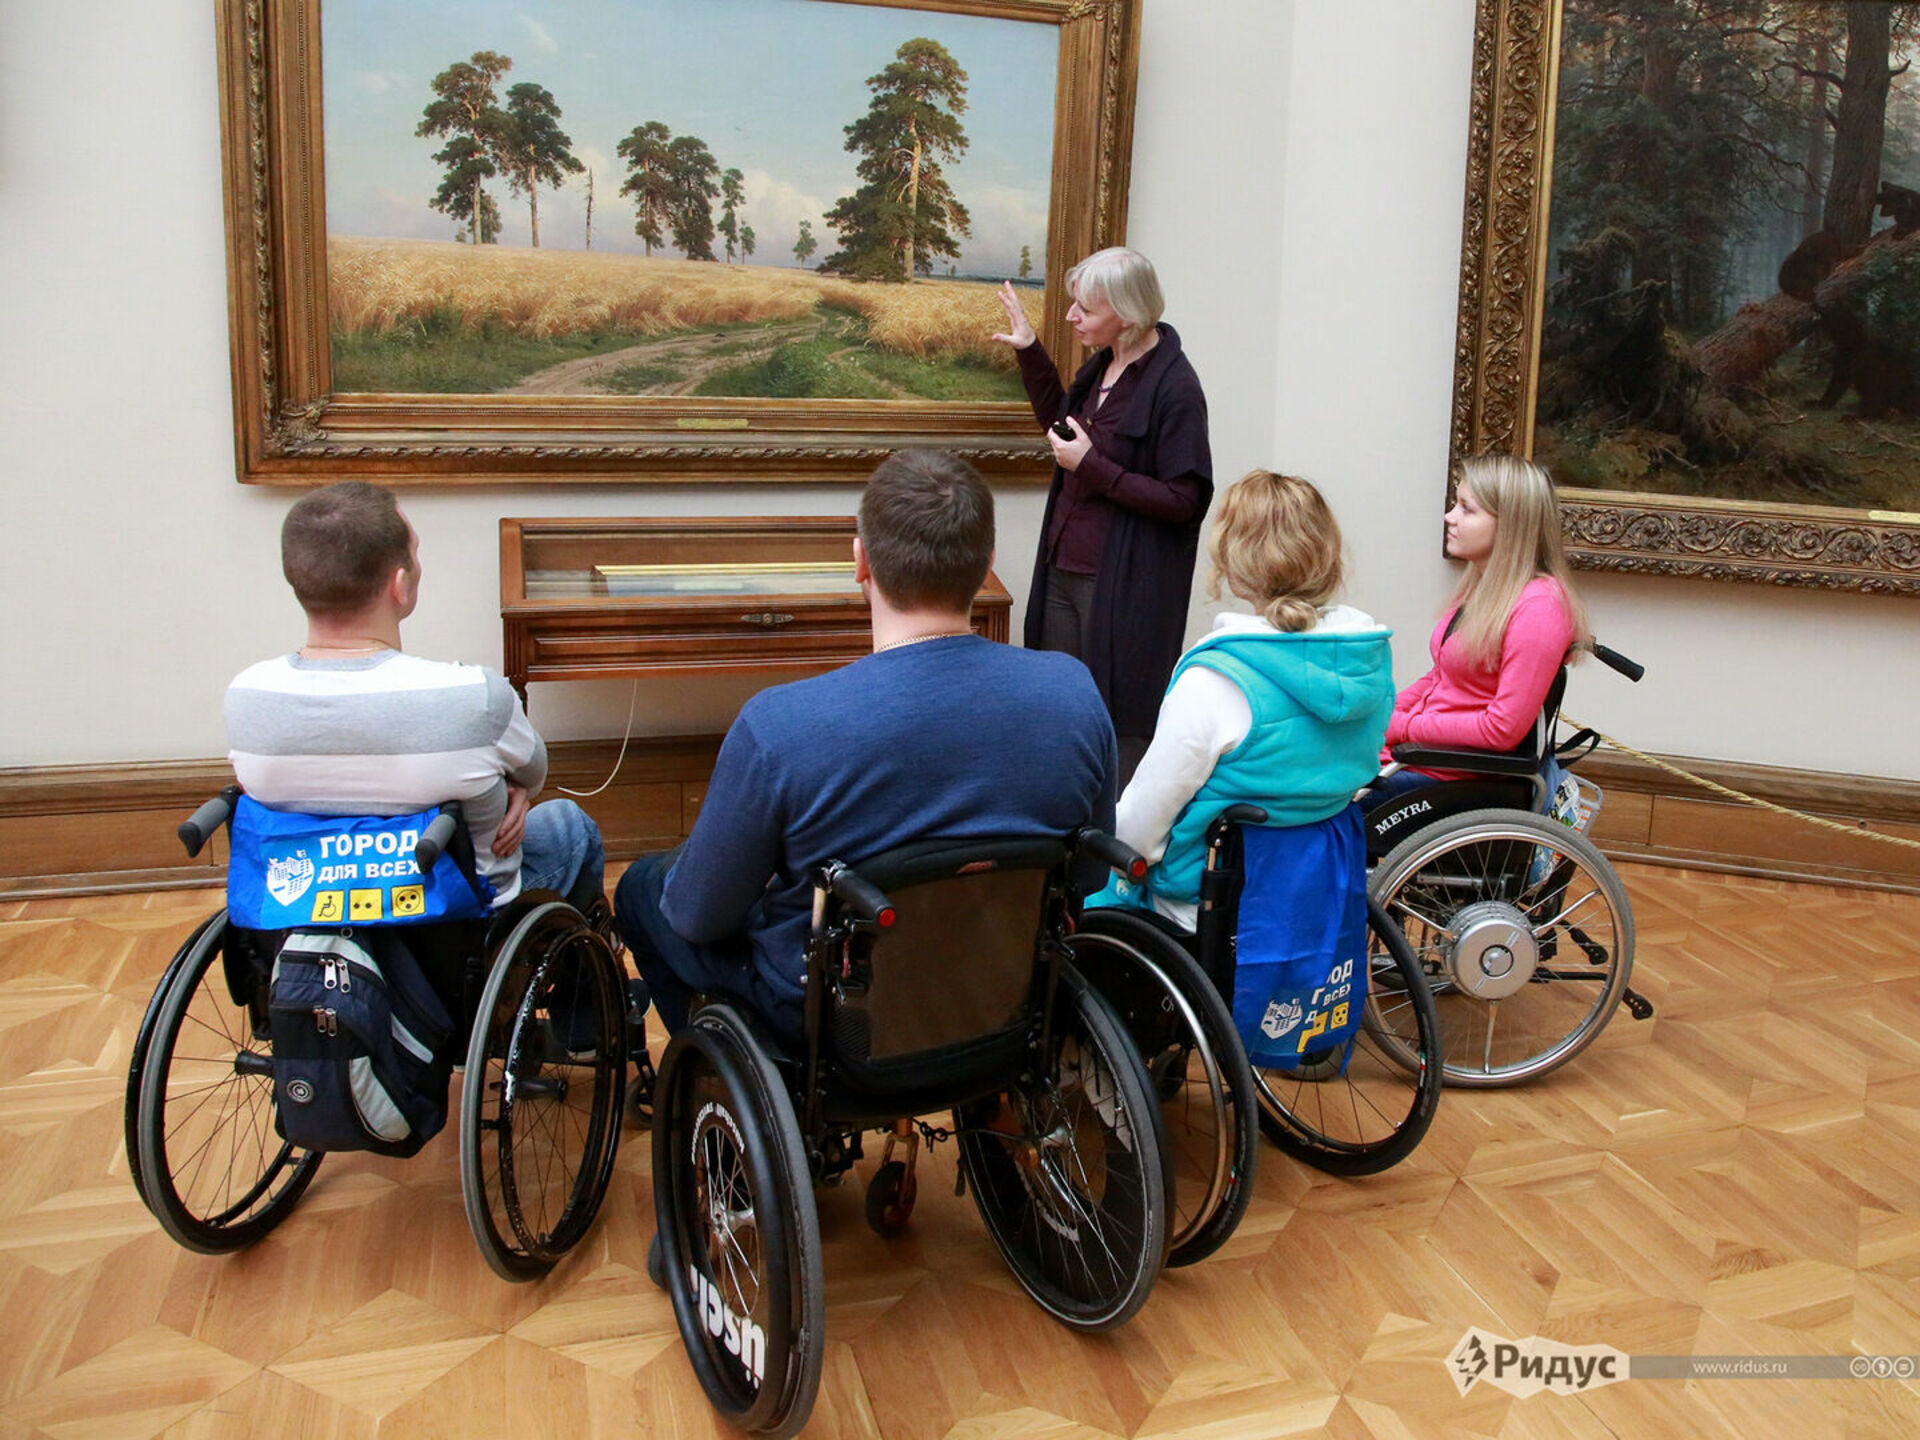 Поддержка общество инвалидов. Музеи для людей с ограниченными возможностями. Экскурсии для инвалидов. Инвалиды в музее. Доступная среда для инвалидов колясочников.